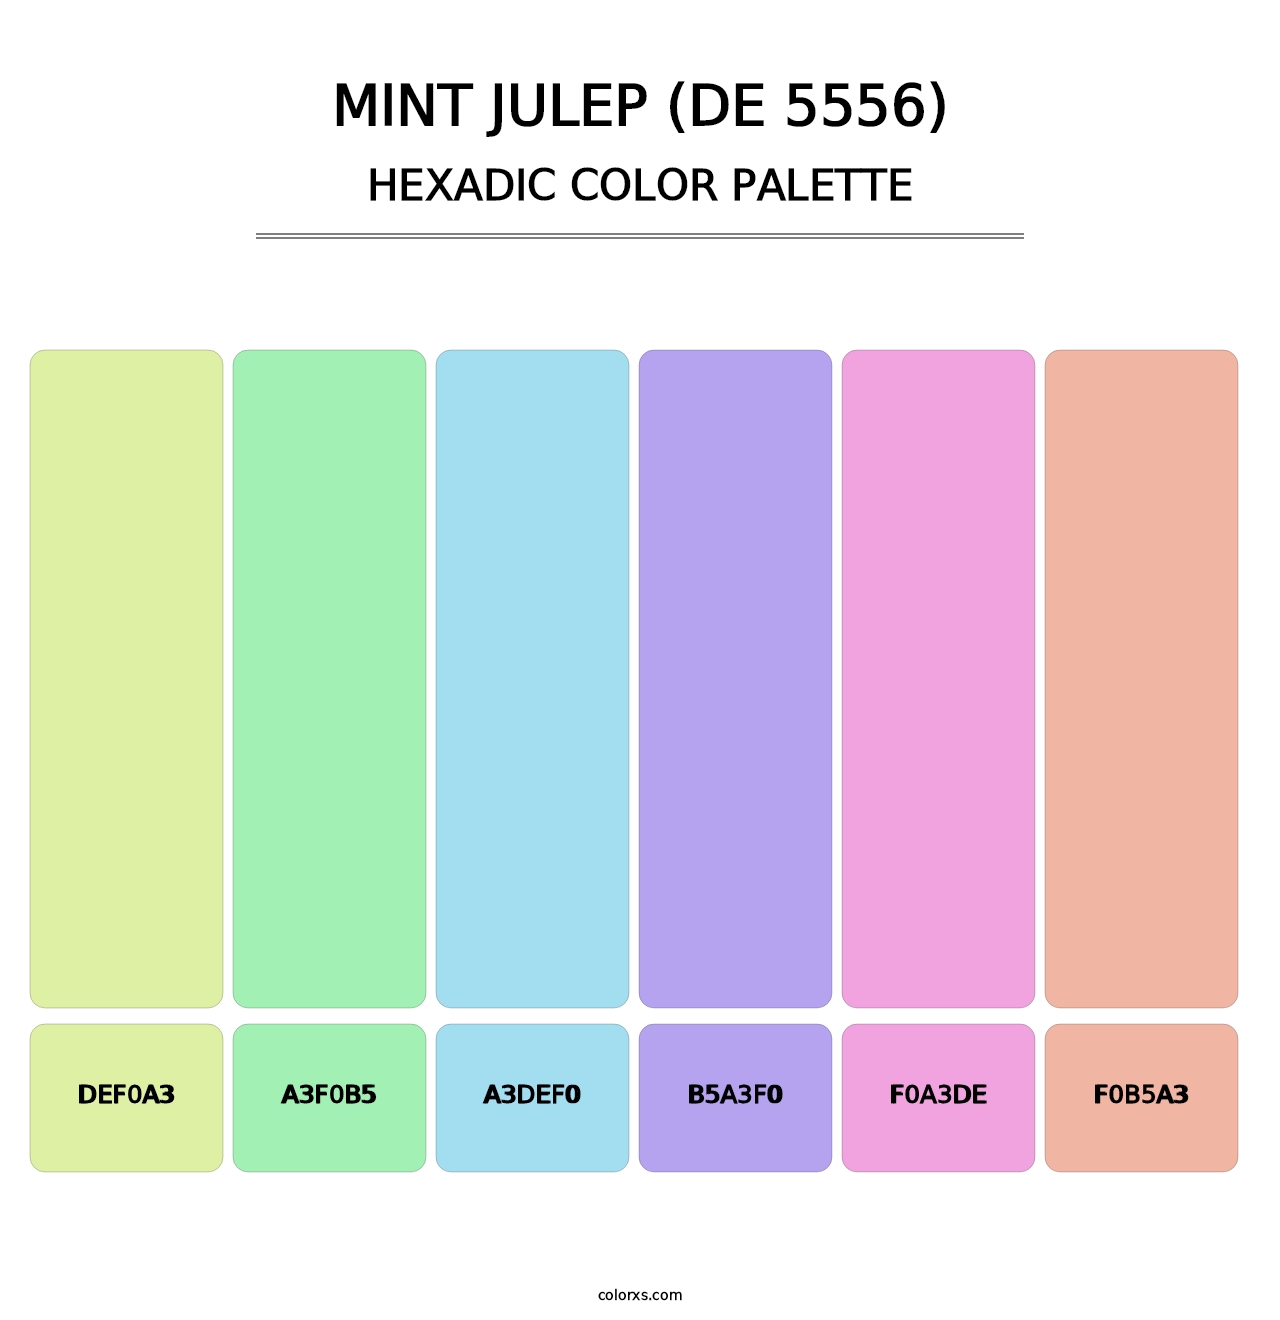 Mint Julep (DE 5556) - Hexadic Color Palette